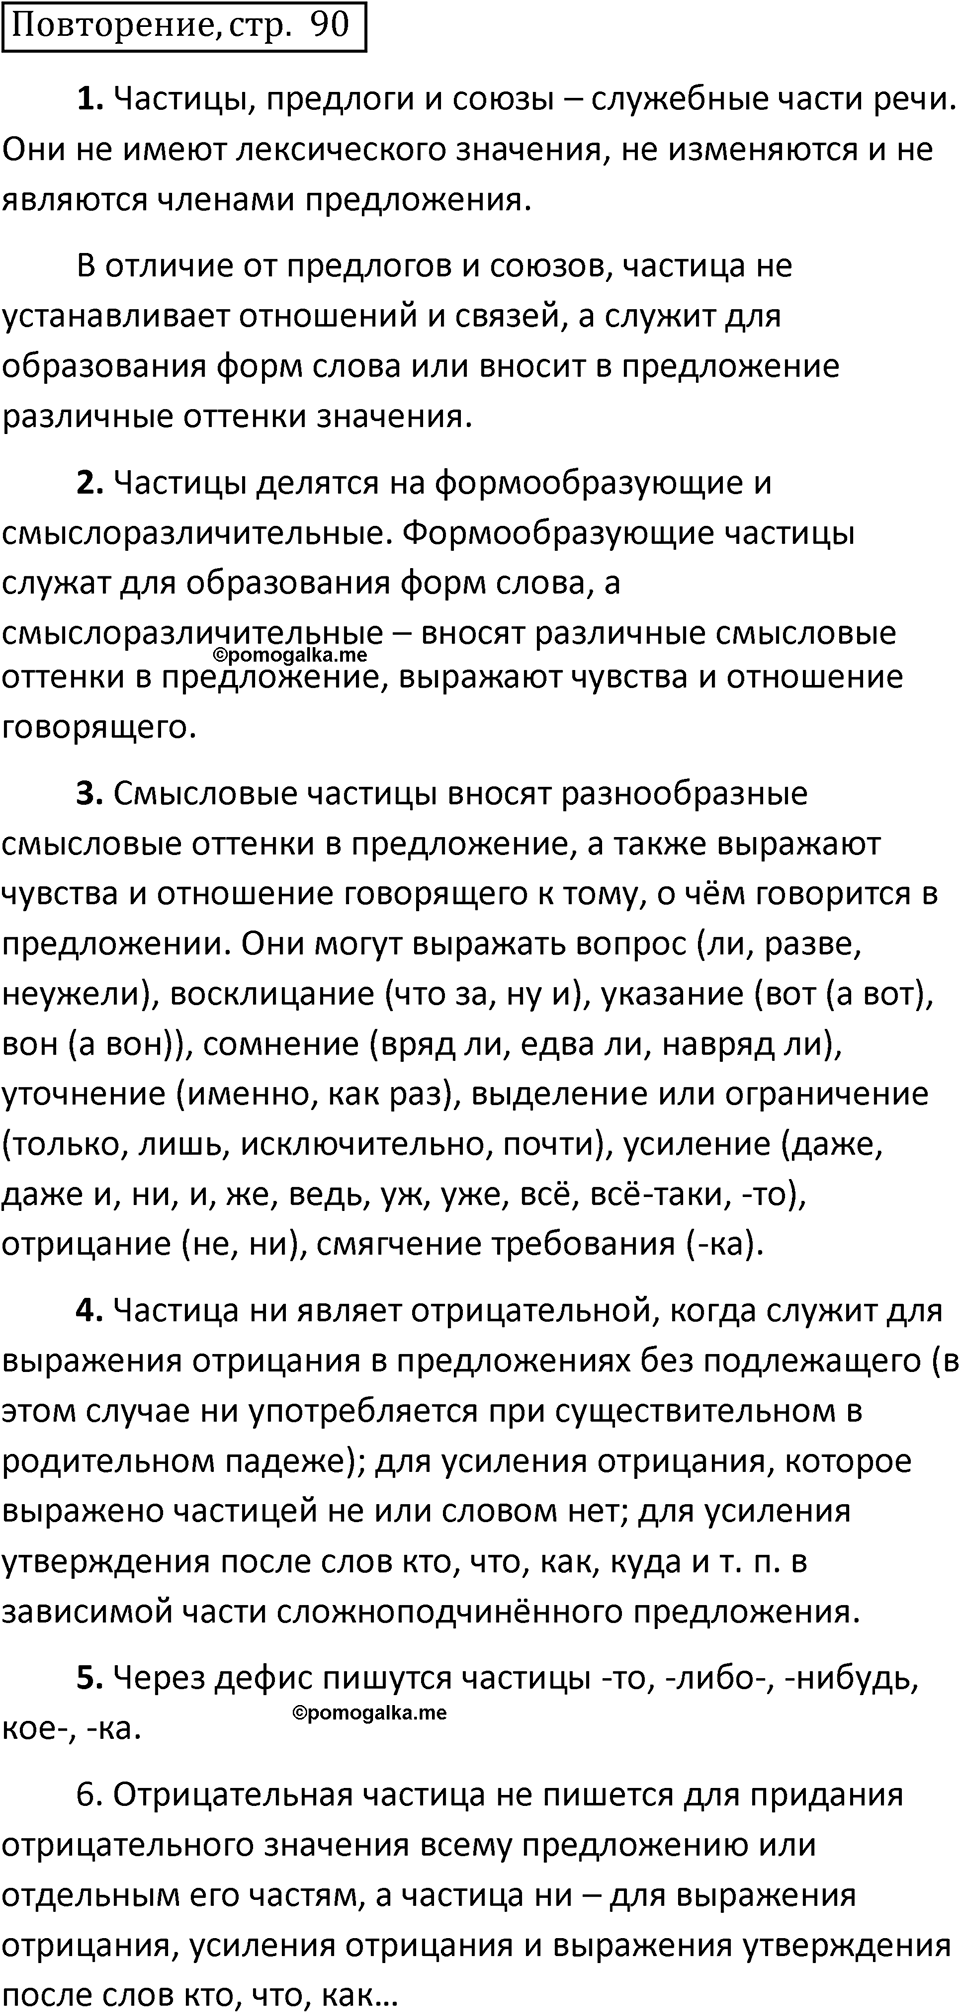 страница 90 повторение русский язык 7 класс Баранов, Ладыженская 2021-2022 год